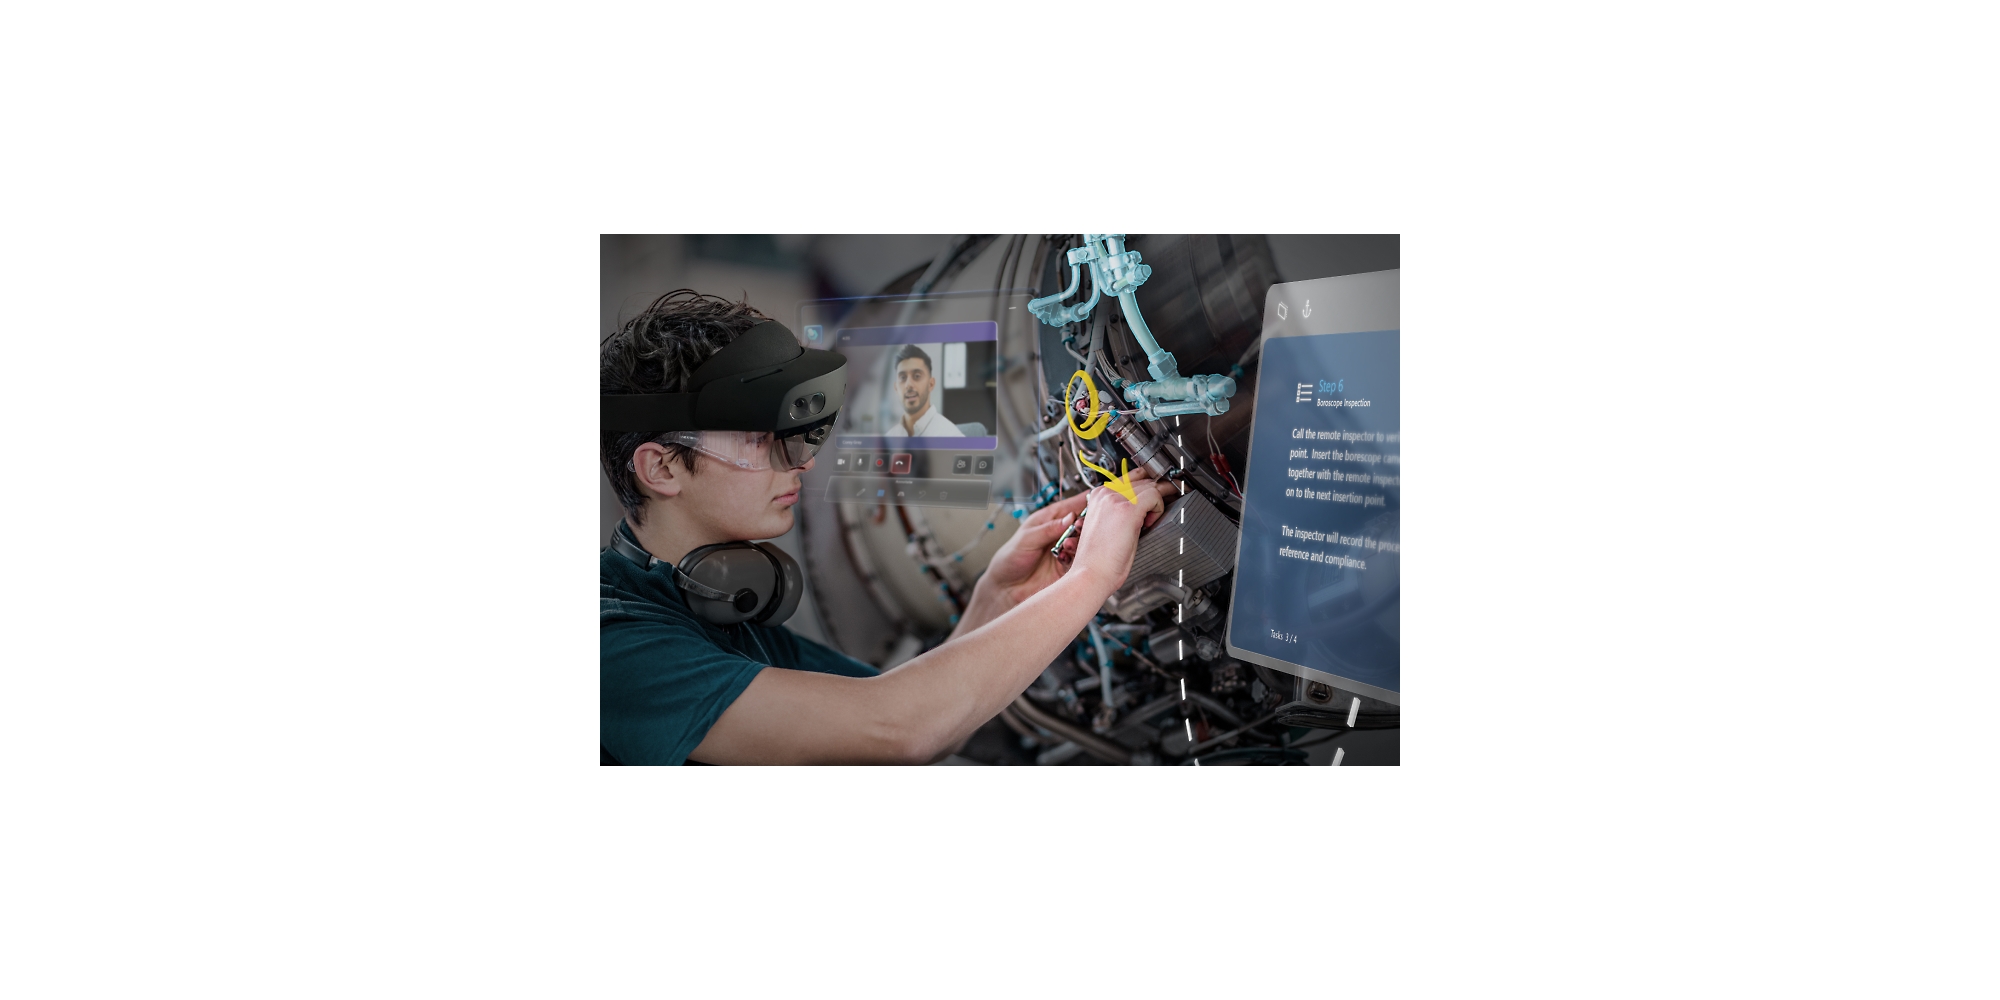 Osoba oglądająca film instruktażowy przy użyciu gogli HoloLens 2 podczas naprawiania maszyny.